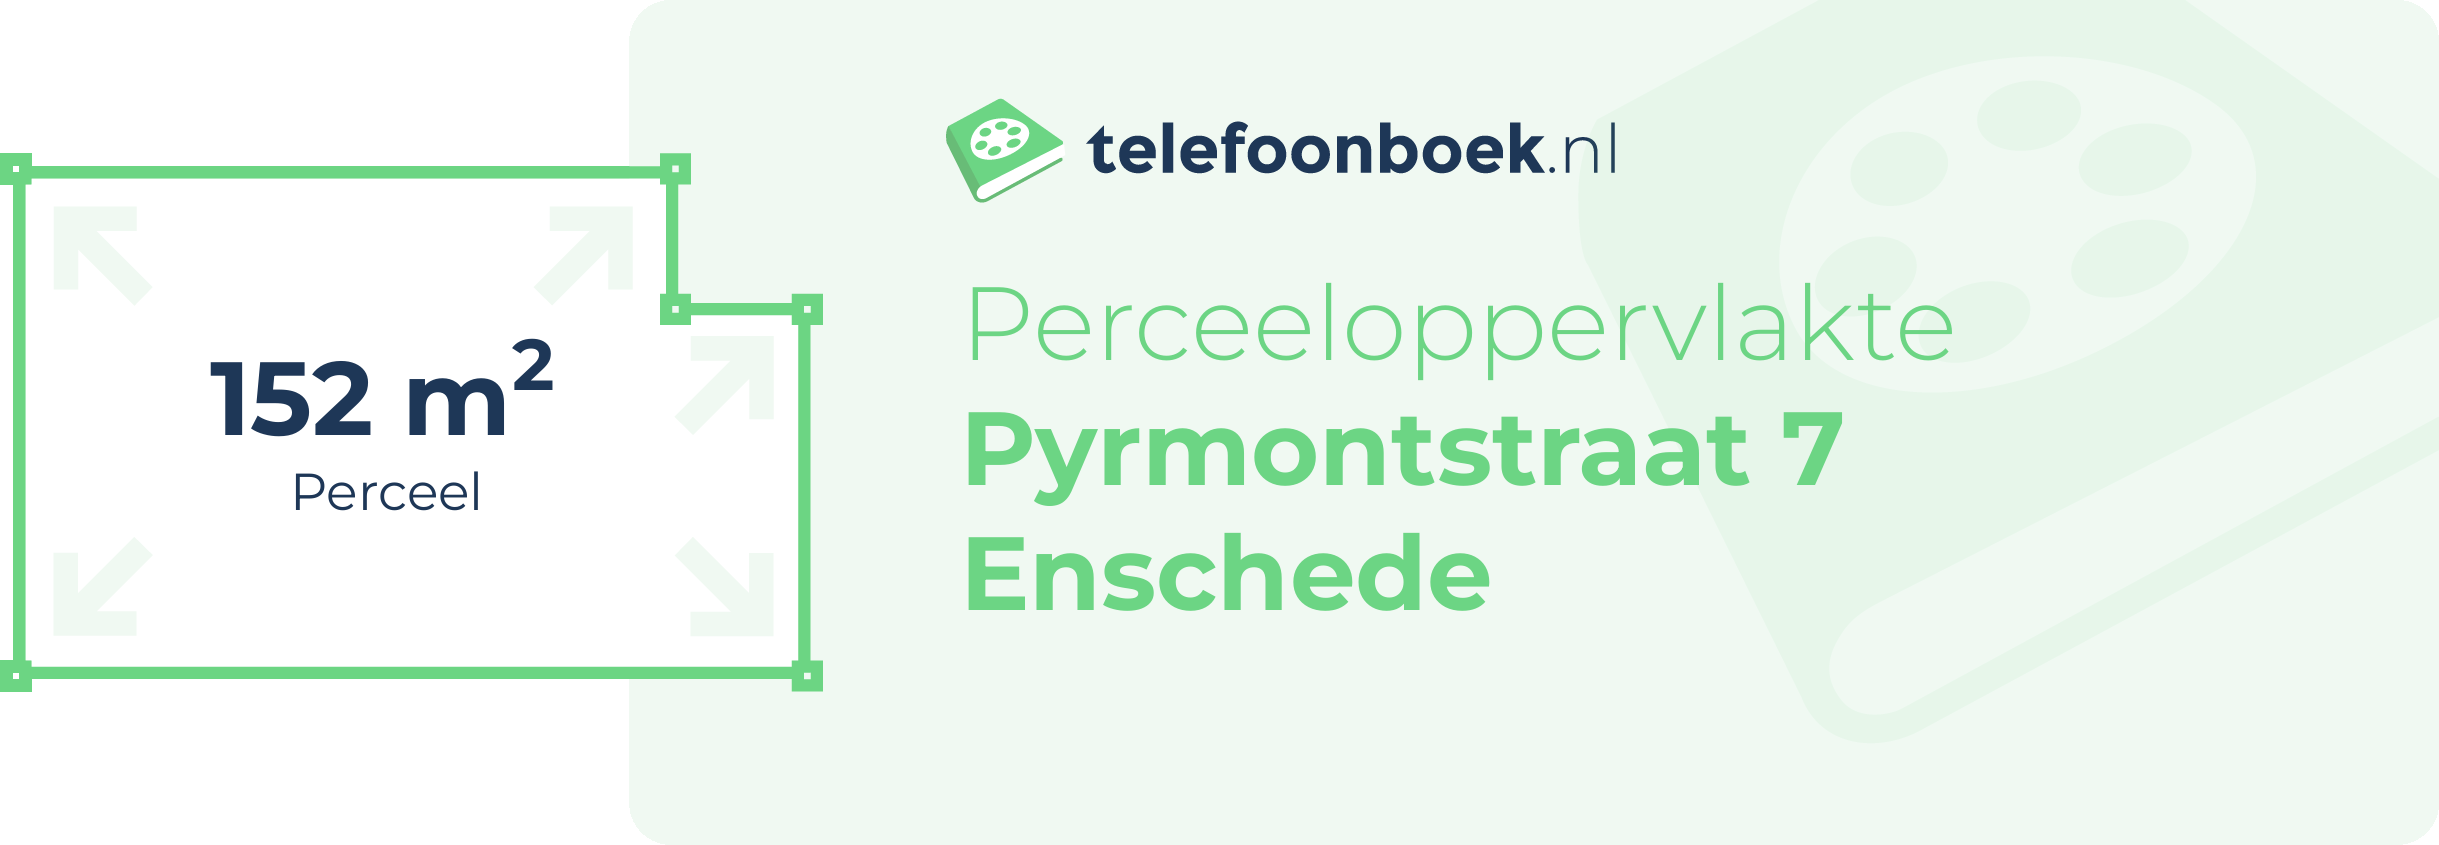 Perceeloppervlakte Pyrmontstraat 7 Enschede